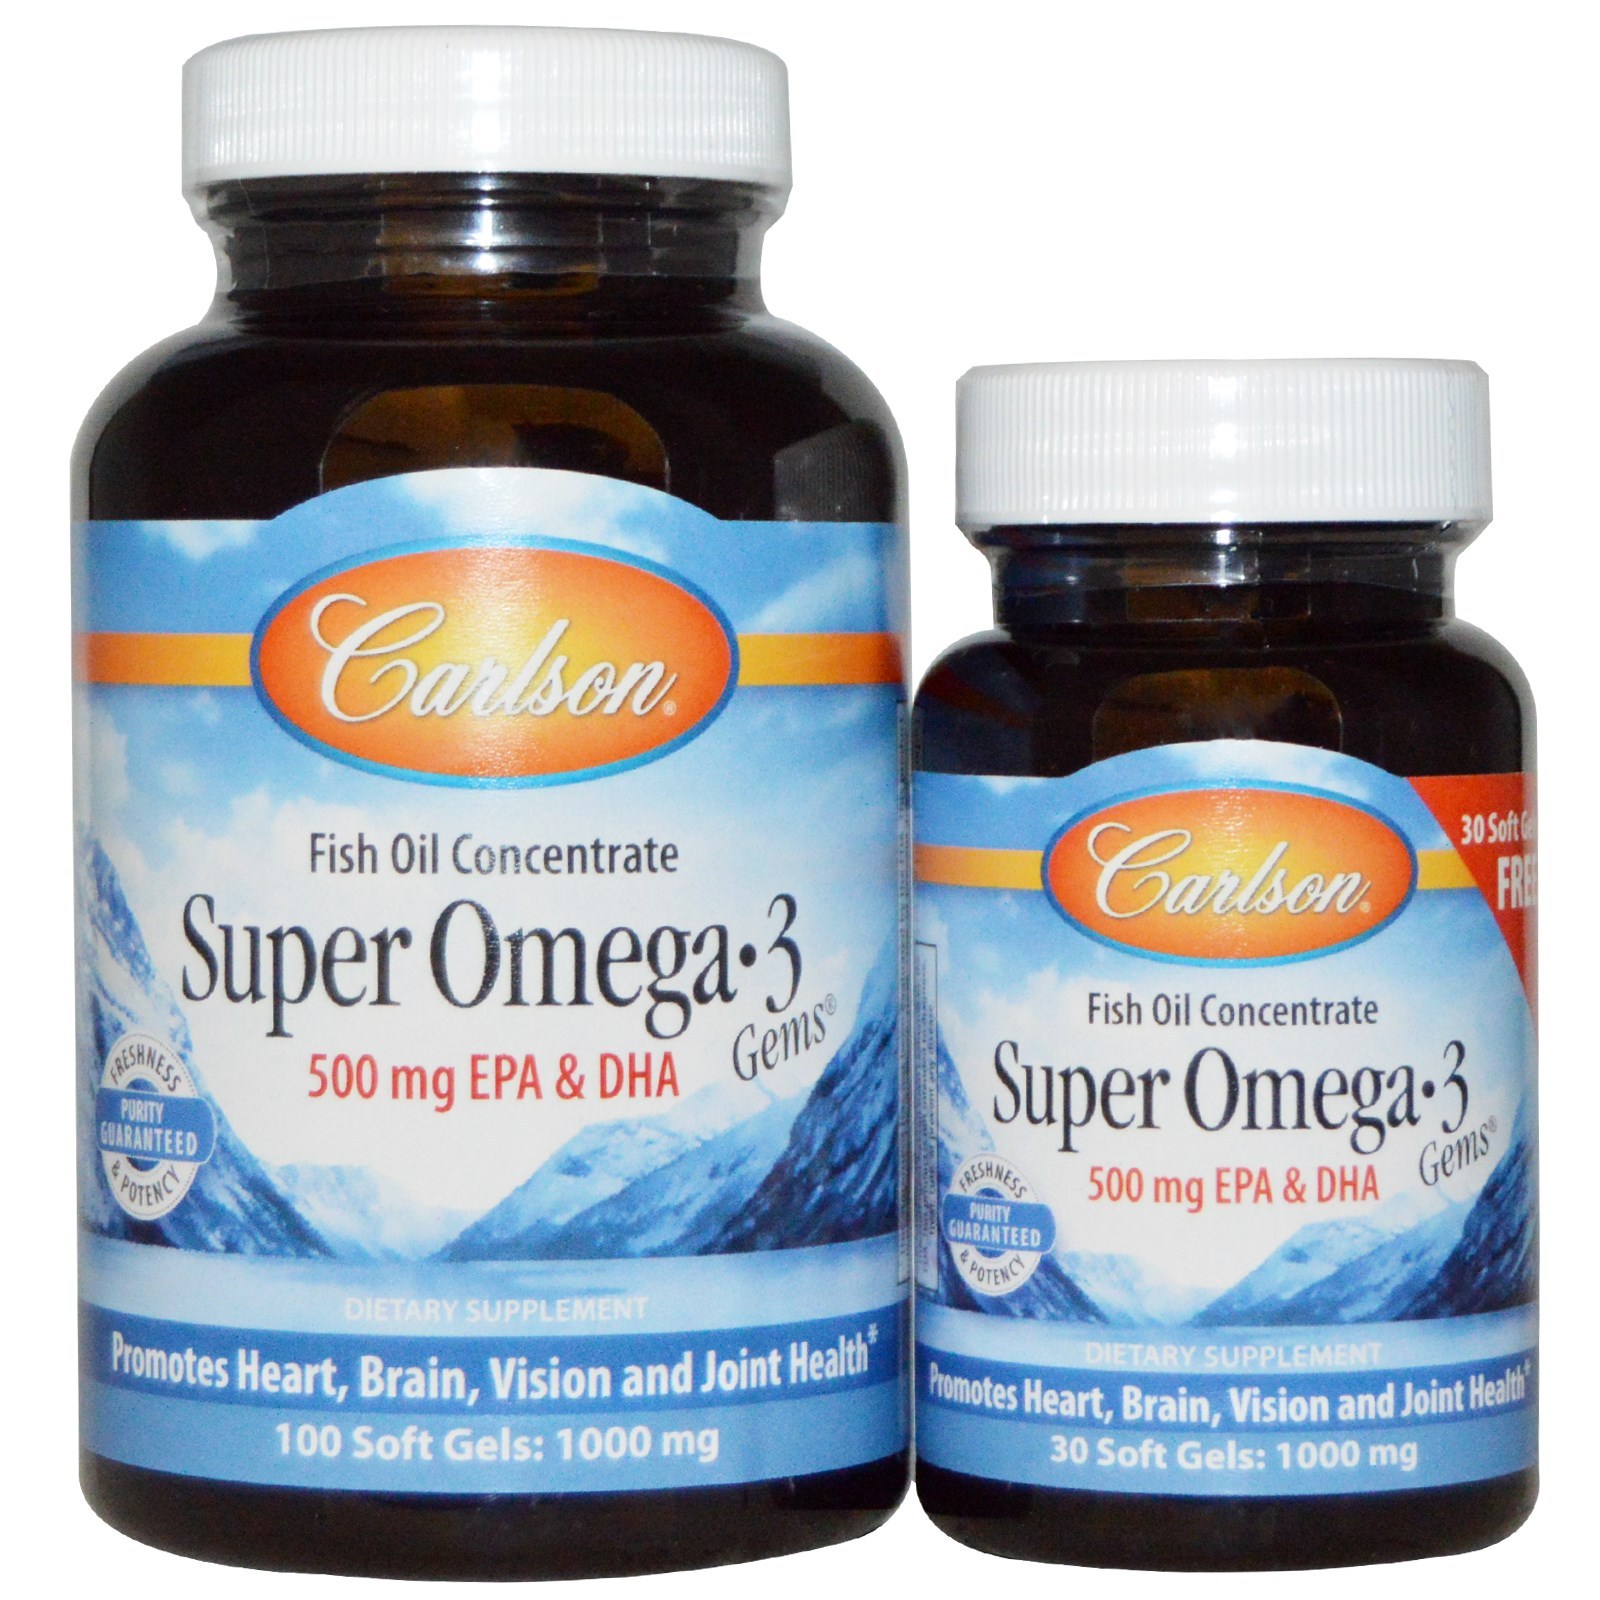 ขายน้ำมันปลา เข้นข้น Carlson Labs Super Omega·3 Gems  1000 mg 100 เม็ด แถมฟรีเพิ่ม 30 เม็ด